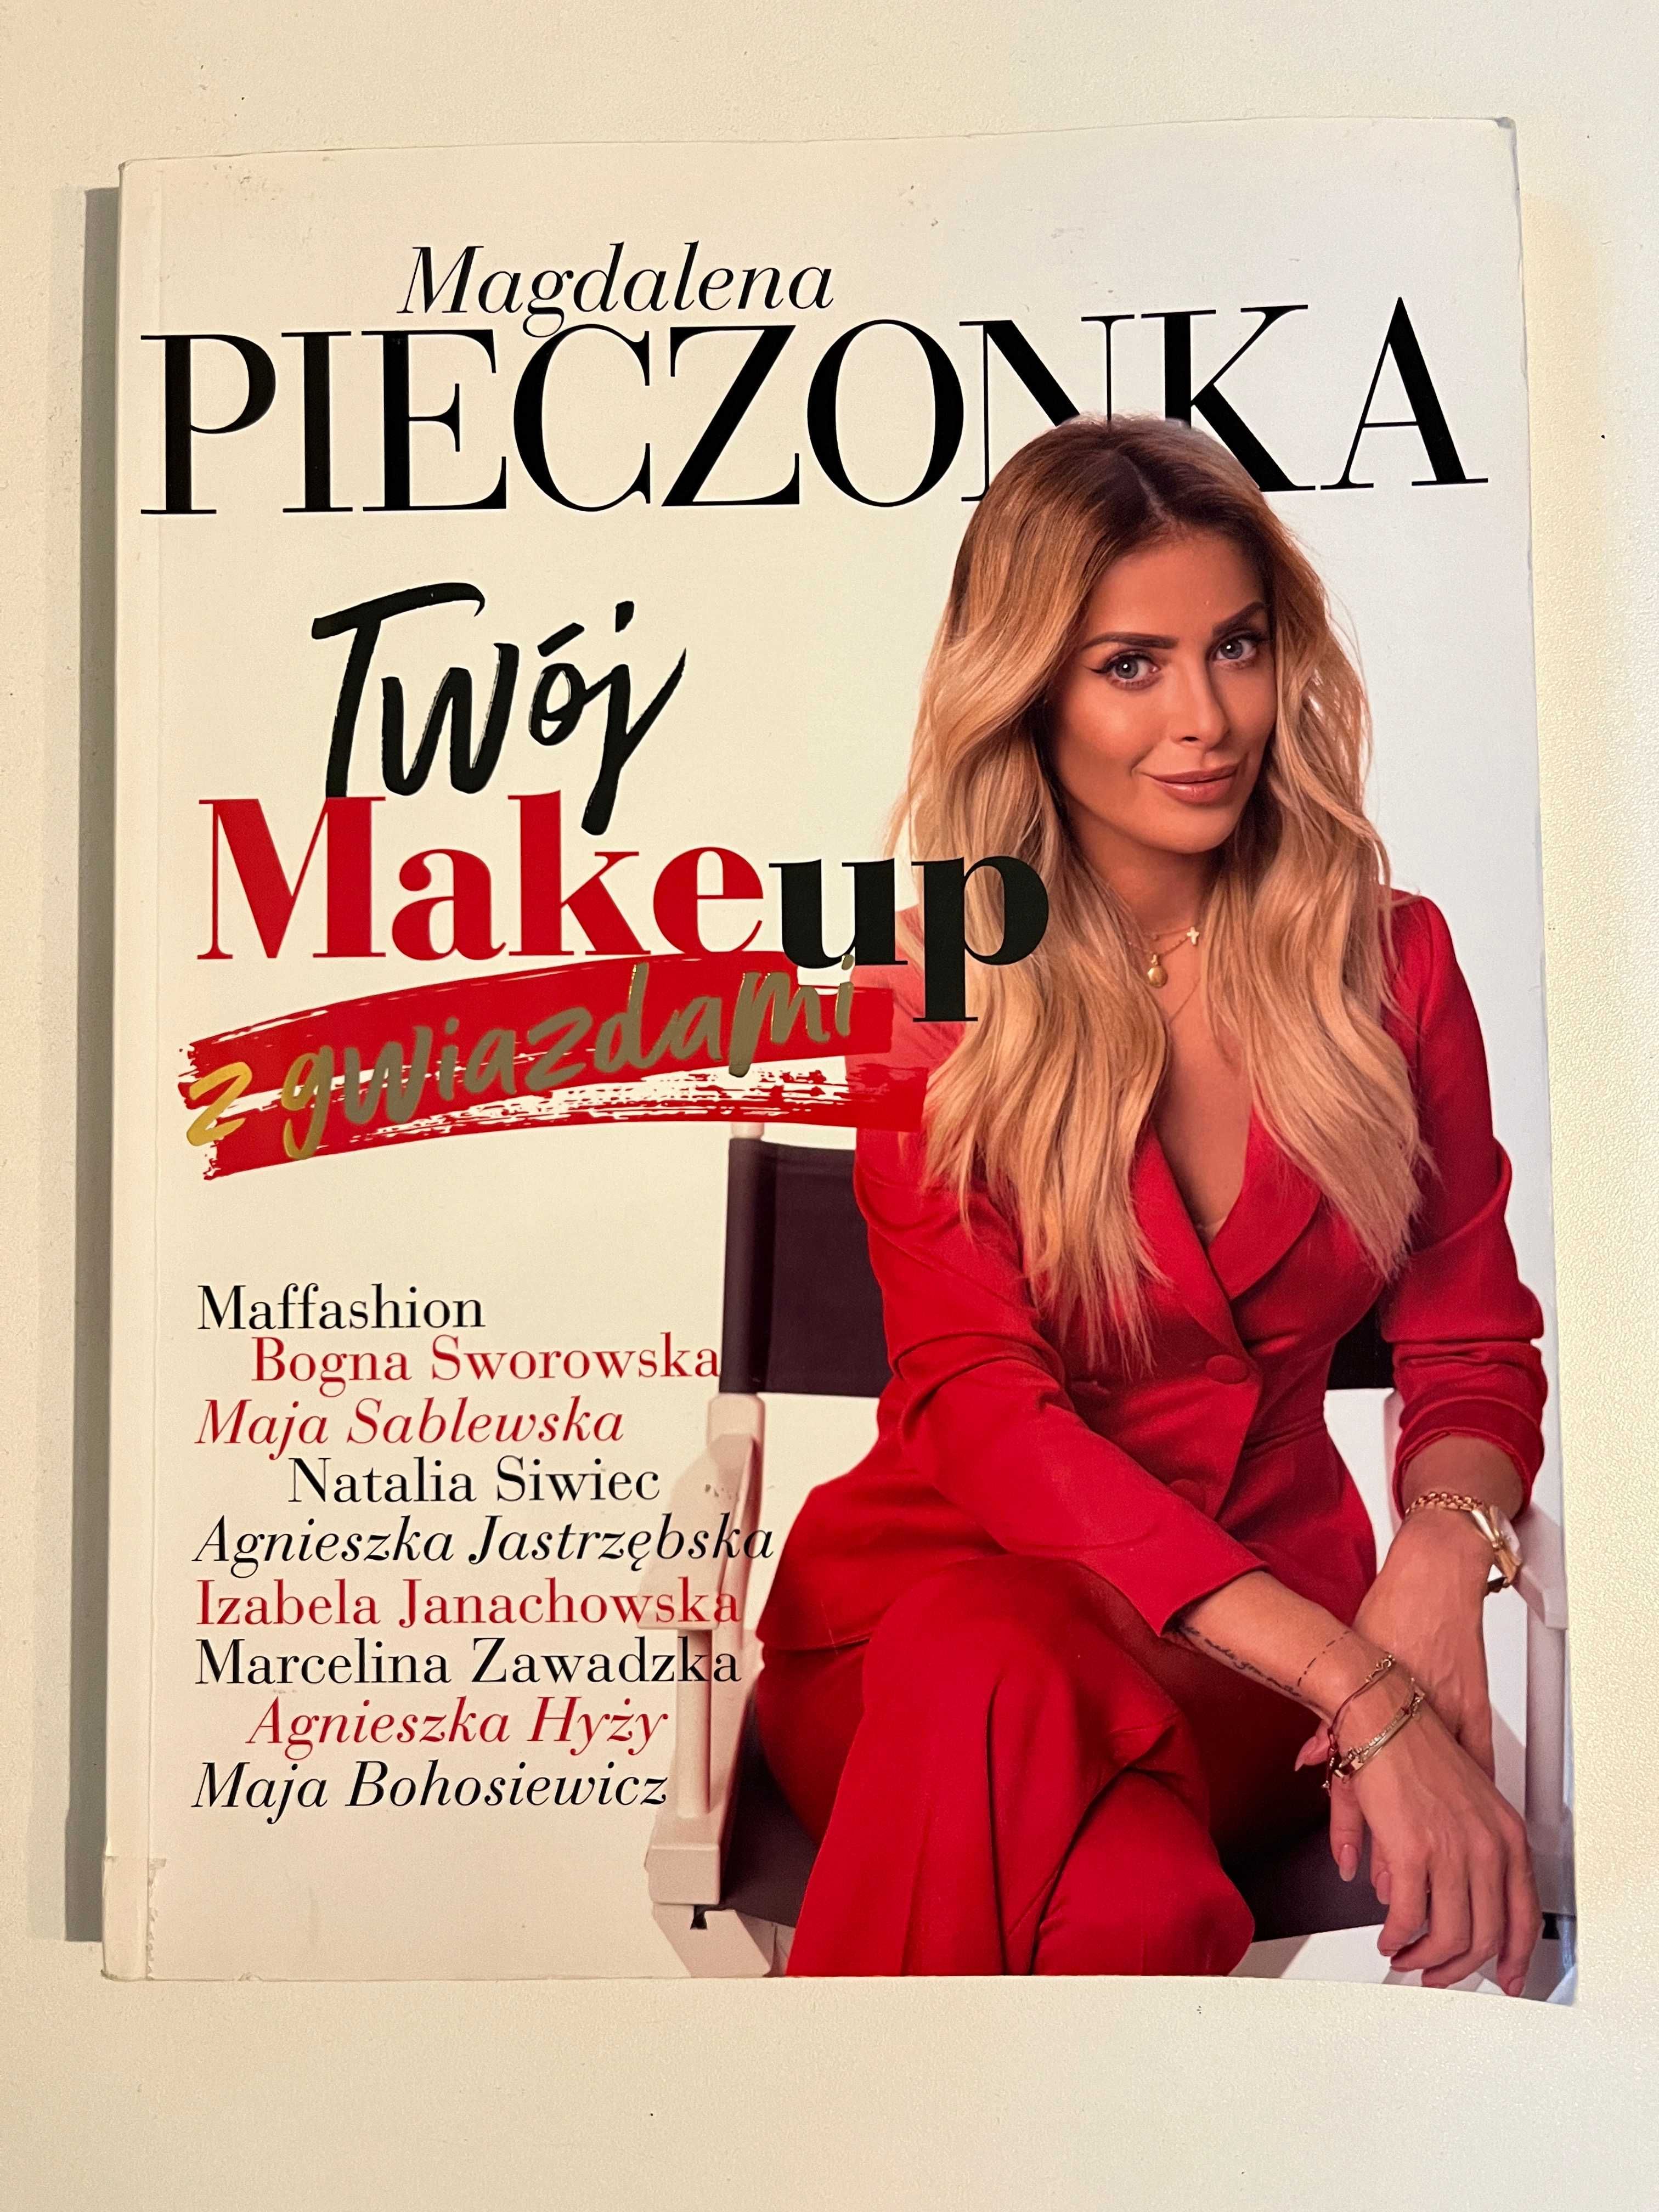 Twój makeup z gwiazdami Magdalena Pieczonka